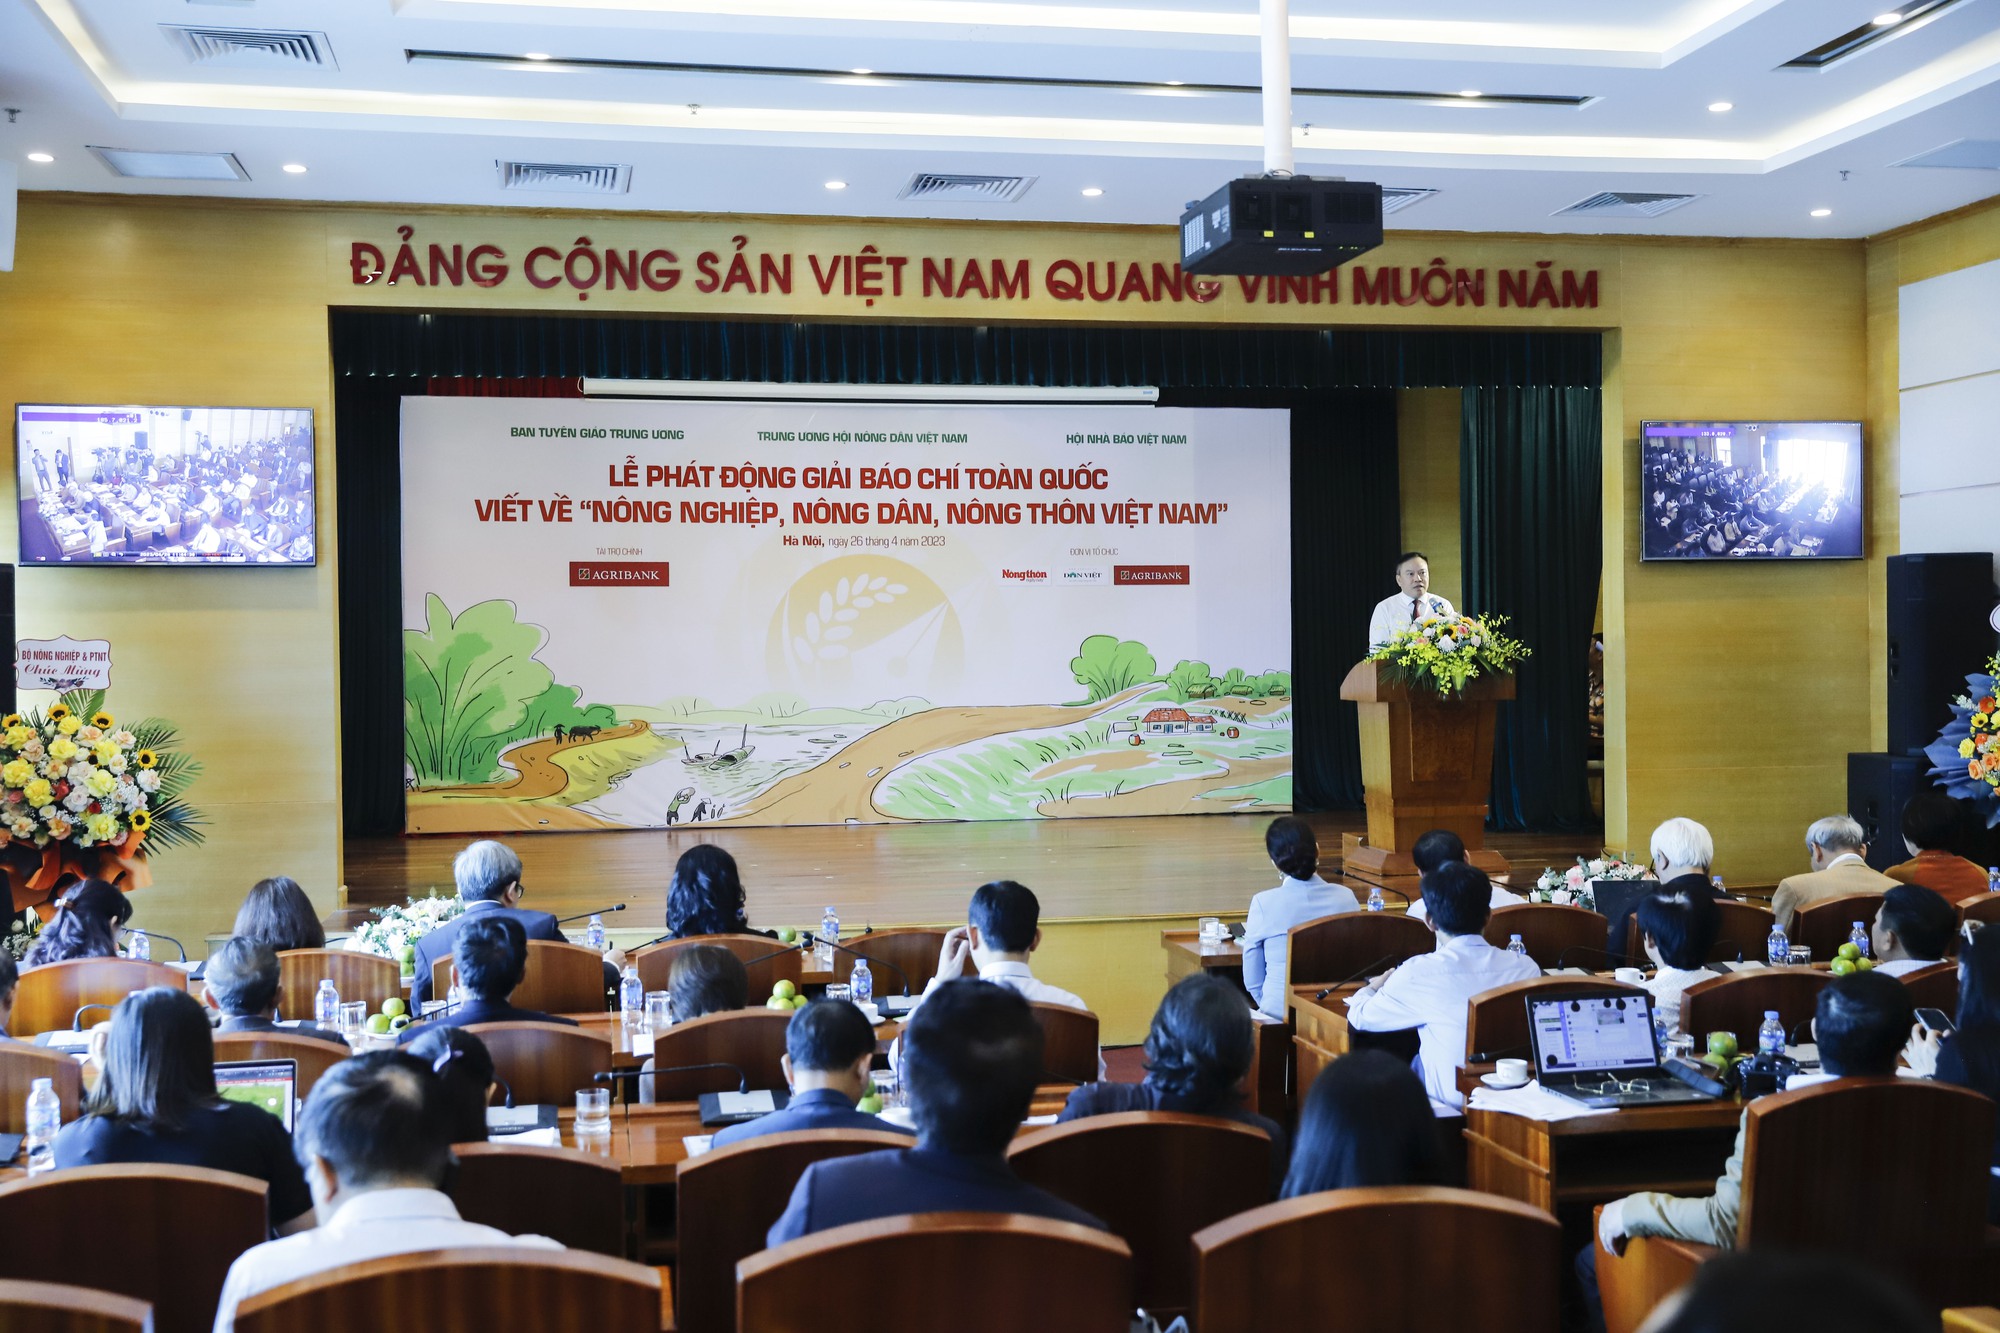 Phó Chủ tịch TƯ Hội NDVN Bùi Thị Thơm: Lan tỏa tiếng nói, hình ảnh nông nghiệp, nông dân, nông thôn Việt Nam- Ảnh 2.